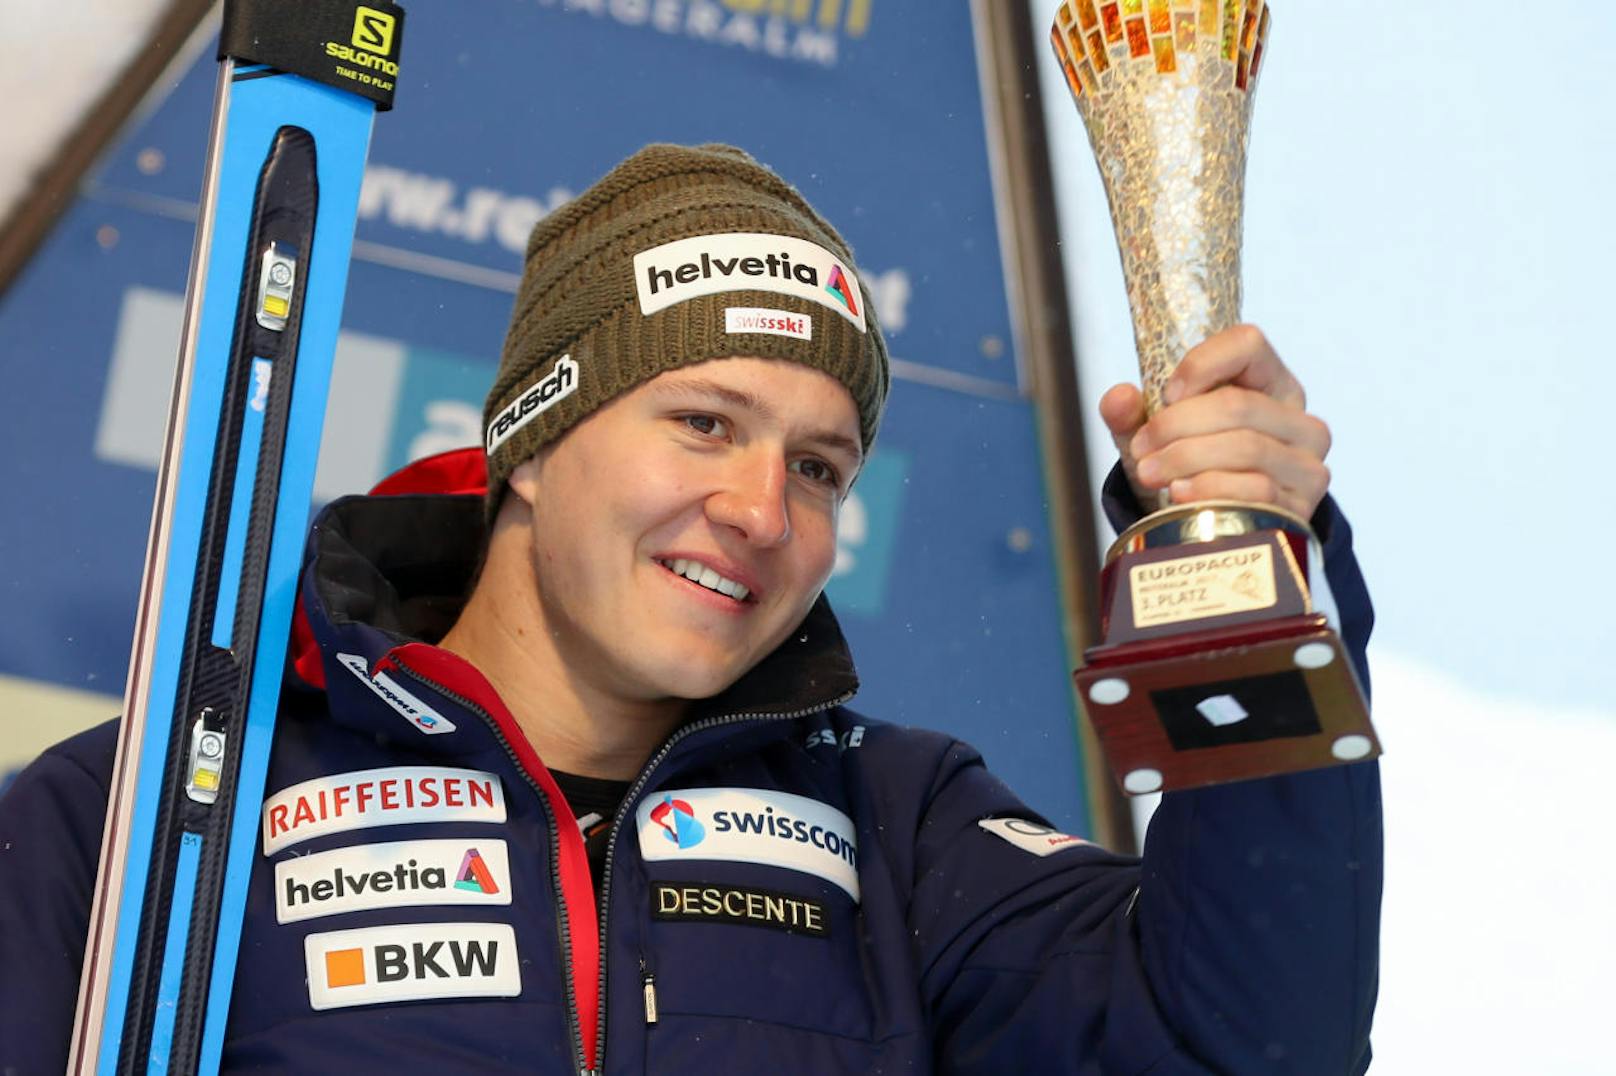 Tragödie im Schweizer Ski-Team. Am 4. November verunglückte das hoffnungsvolle Talent Luca Barandun bei einem tragischen Paragleit-Unfall. Der 24-jährige Schweizer war in einem Schulungsflug unterwegs.